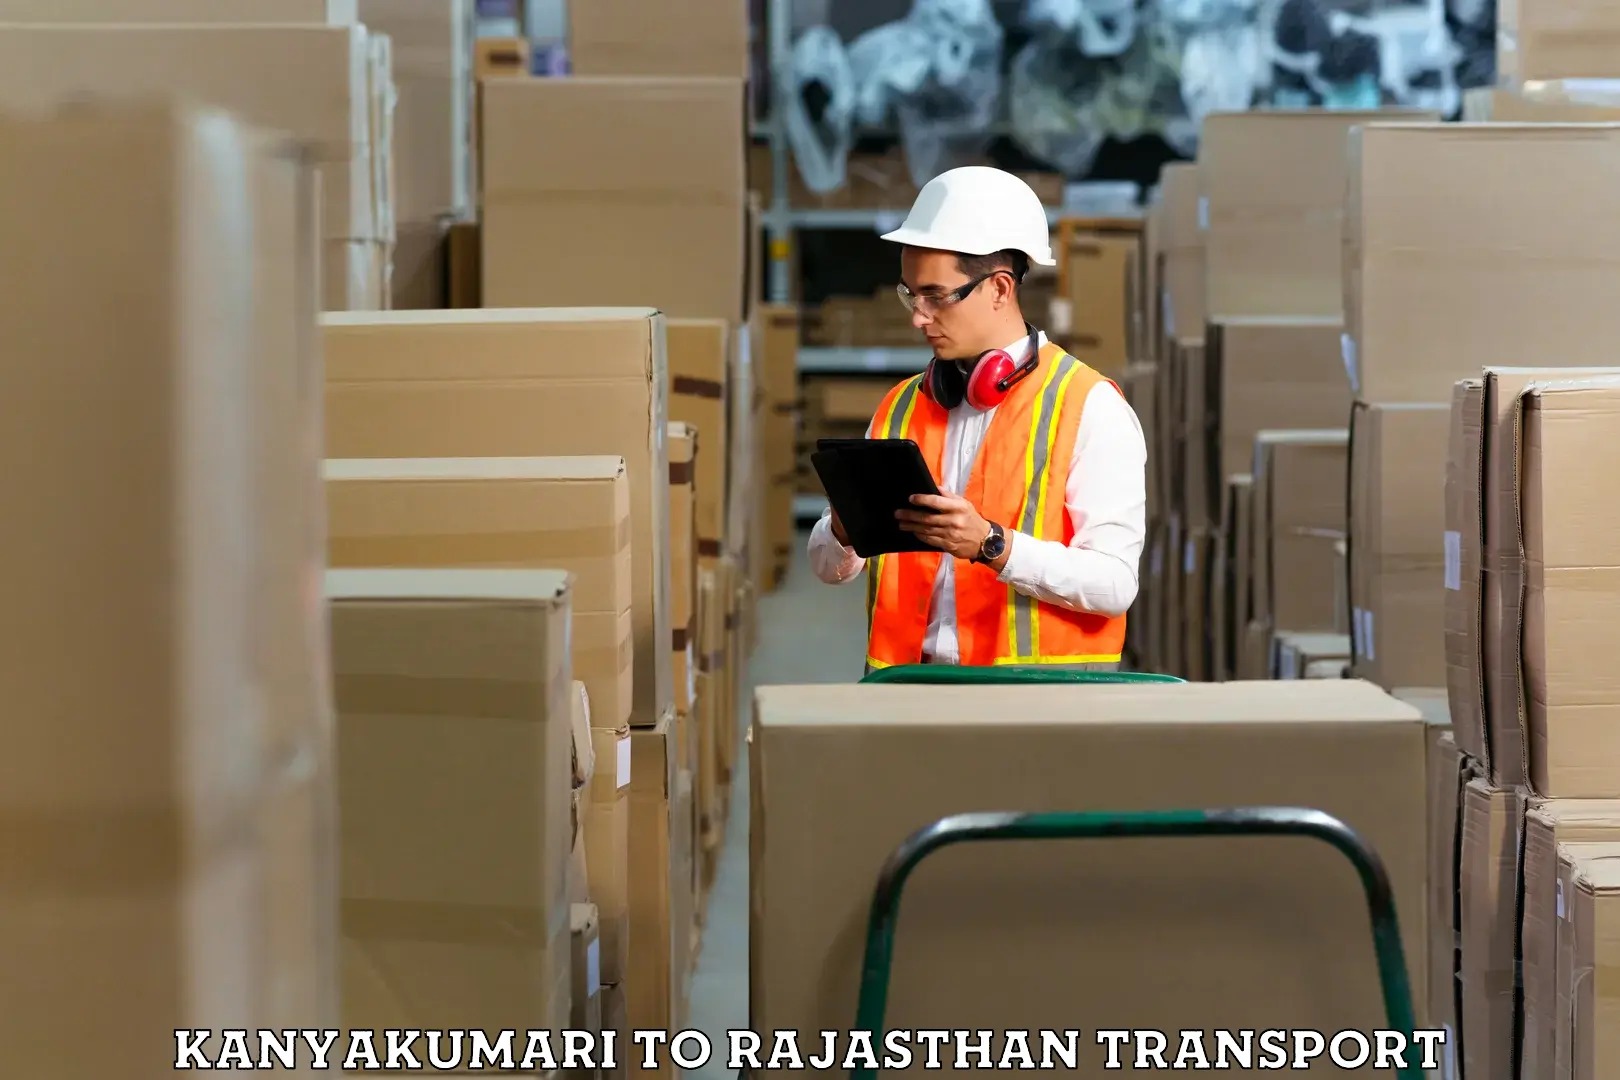 Commercial transport service Kanyakumari to Ramgarh Sikar